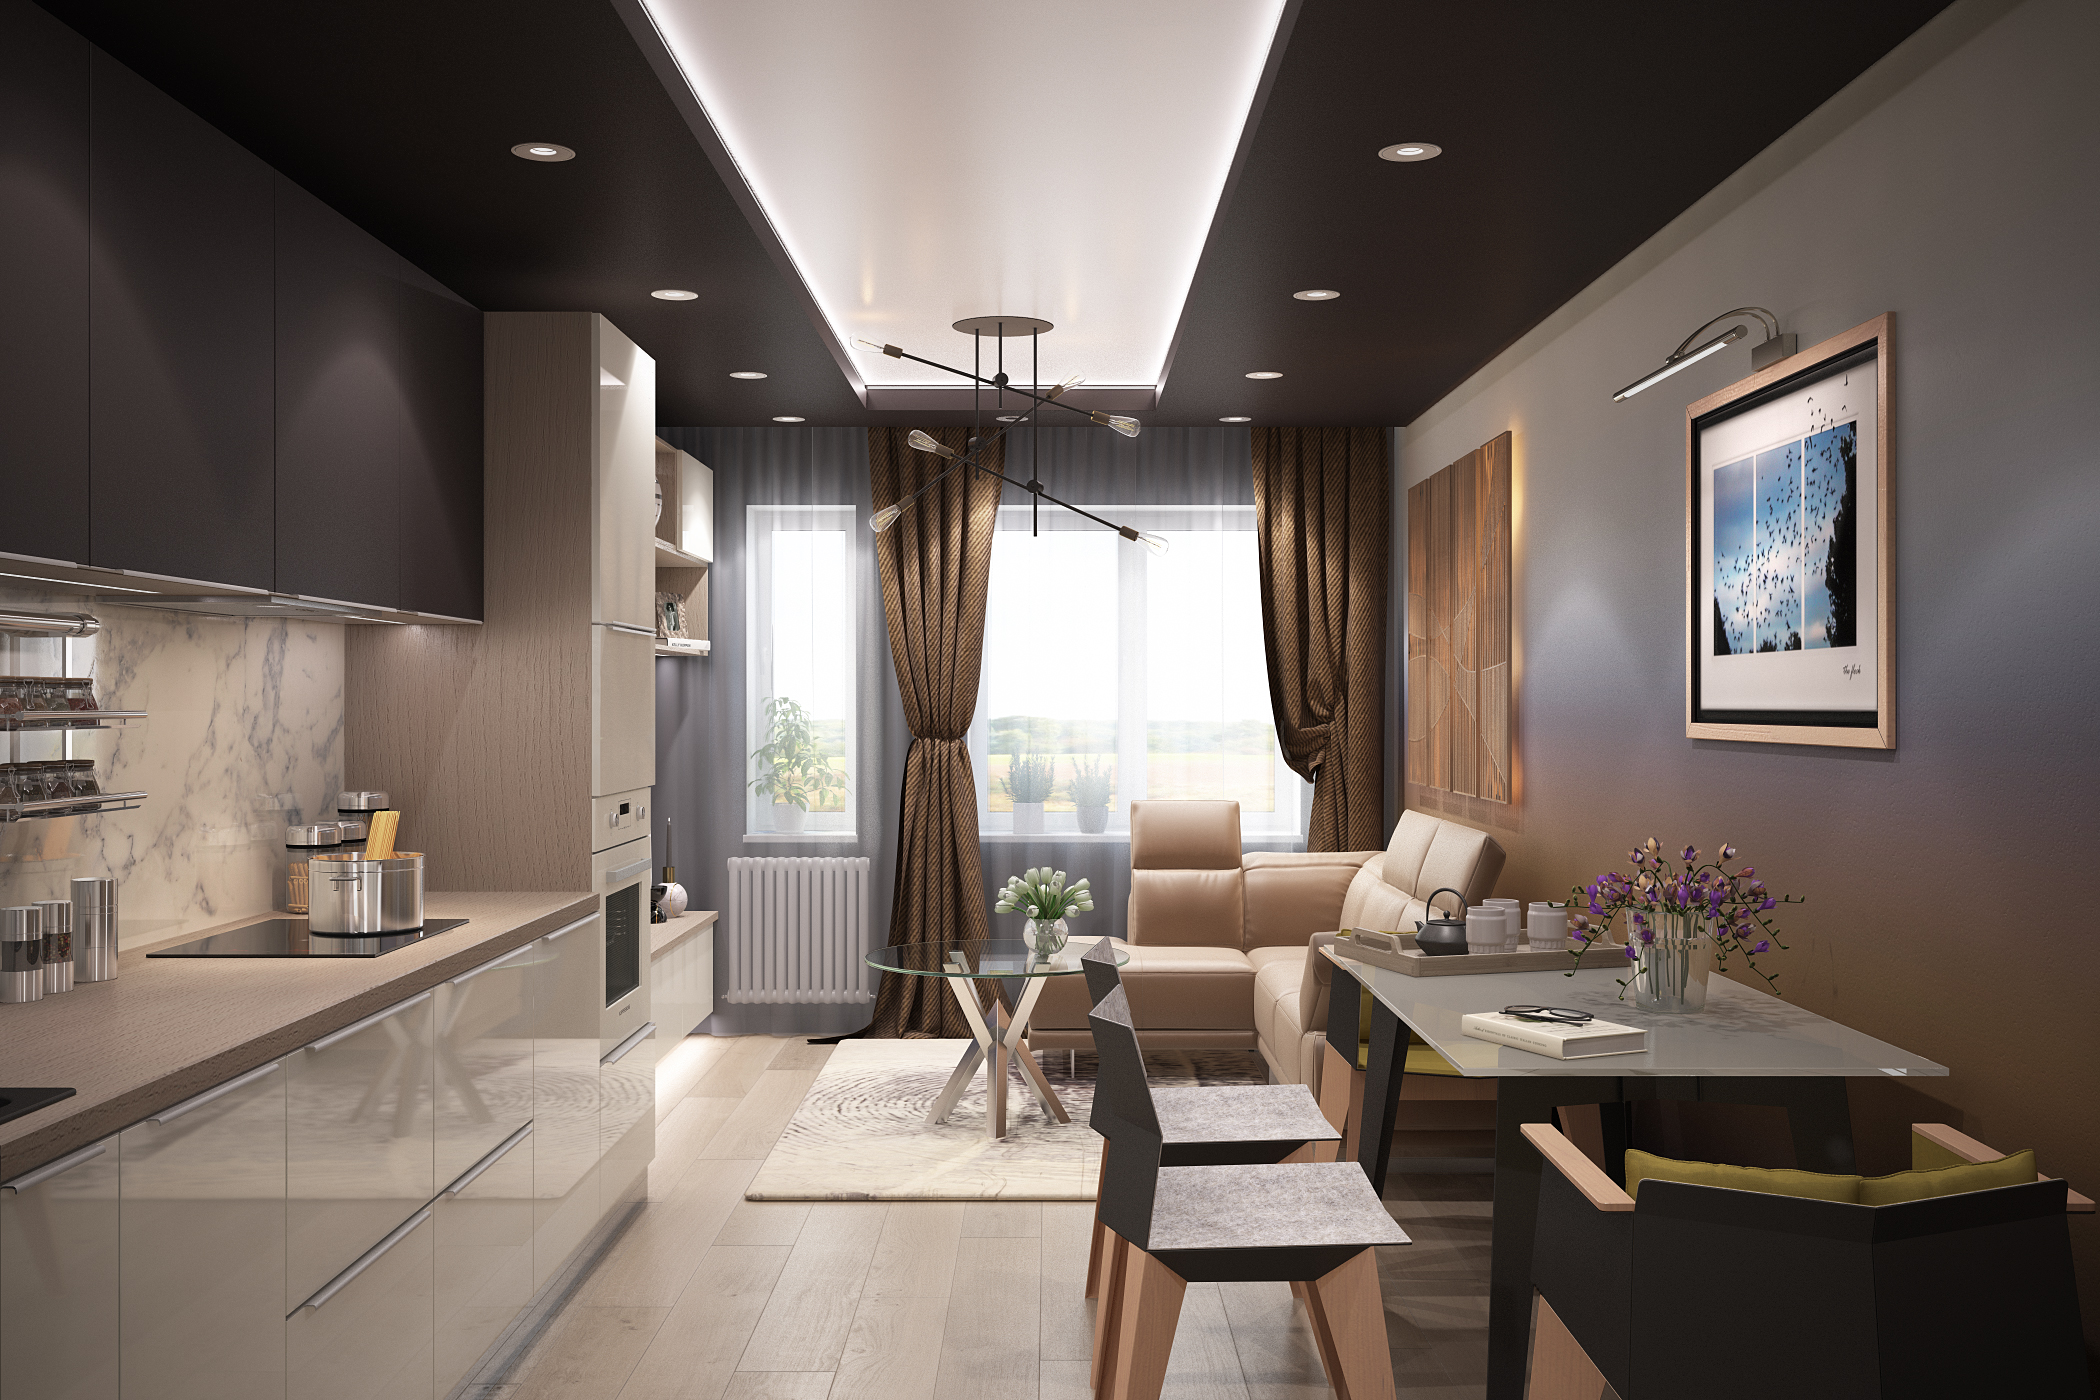 रसोई घर और रहने वाले कमरे 3d max vray 3.0 में प्रस्तुत छवि